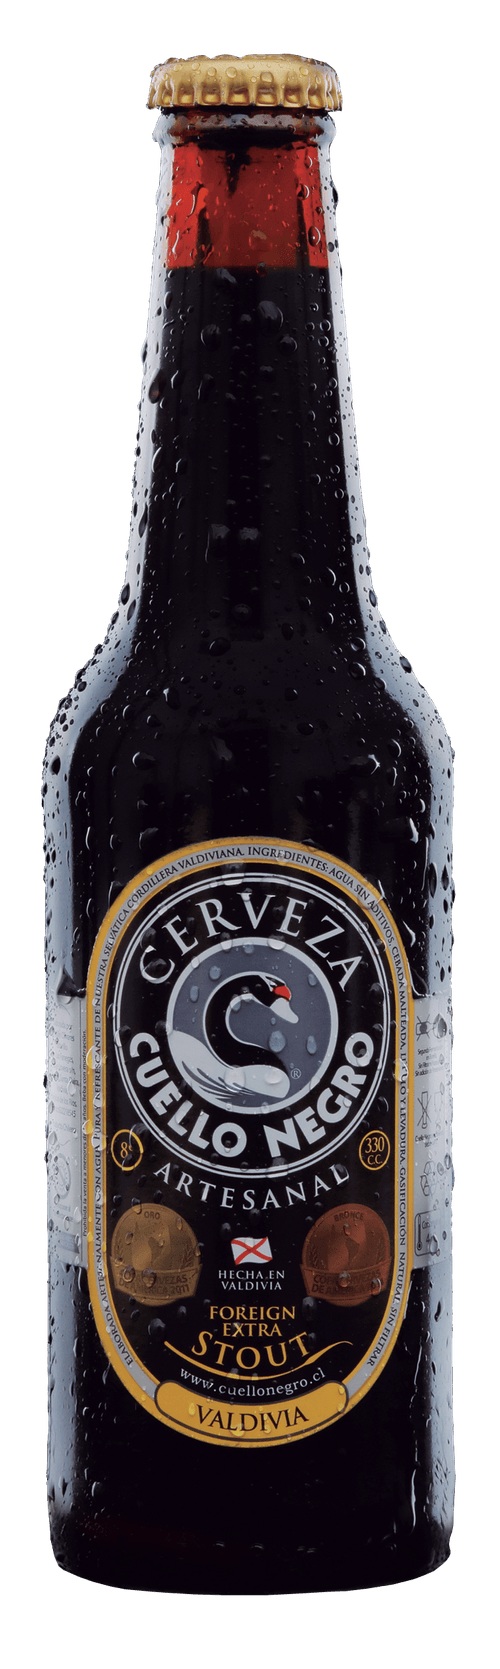 Cerveza Cuello Negro Stout Botella 330 ml